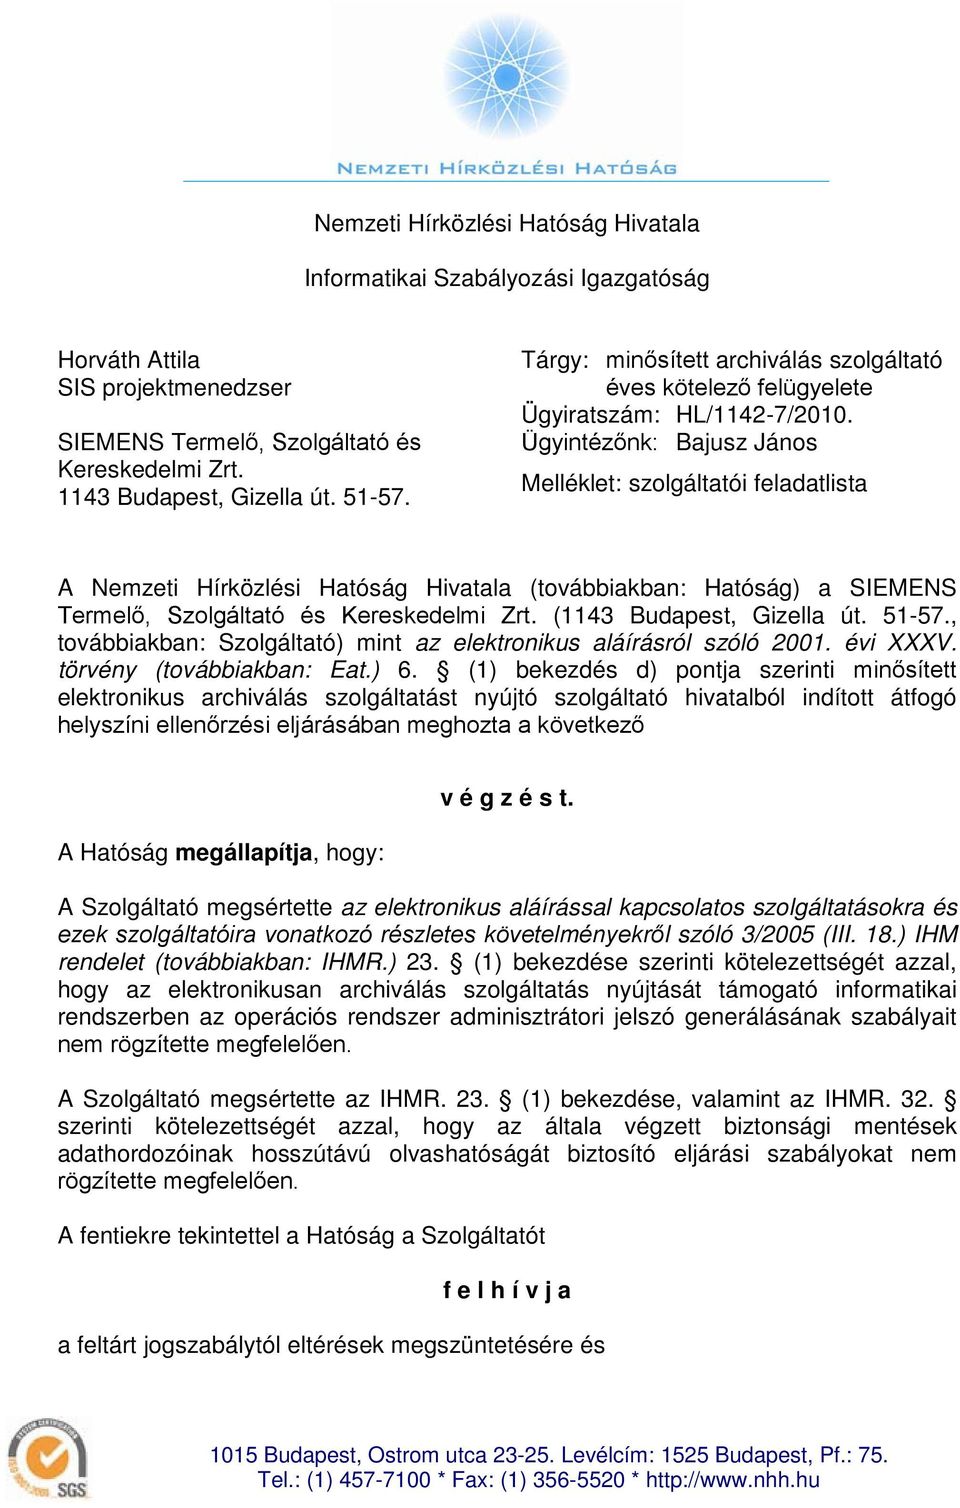 (továbbiakban: Hatóság) a SIEMENS Termelő, Szolgáltató és Kereskedelmi Zrt (1143 Budapest, Gizella út 51-57, továbbiakban: Szolgáltató) mint az elektronikus aláírásról szóló 2001 évi XXXV törvény